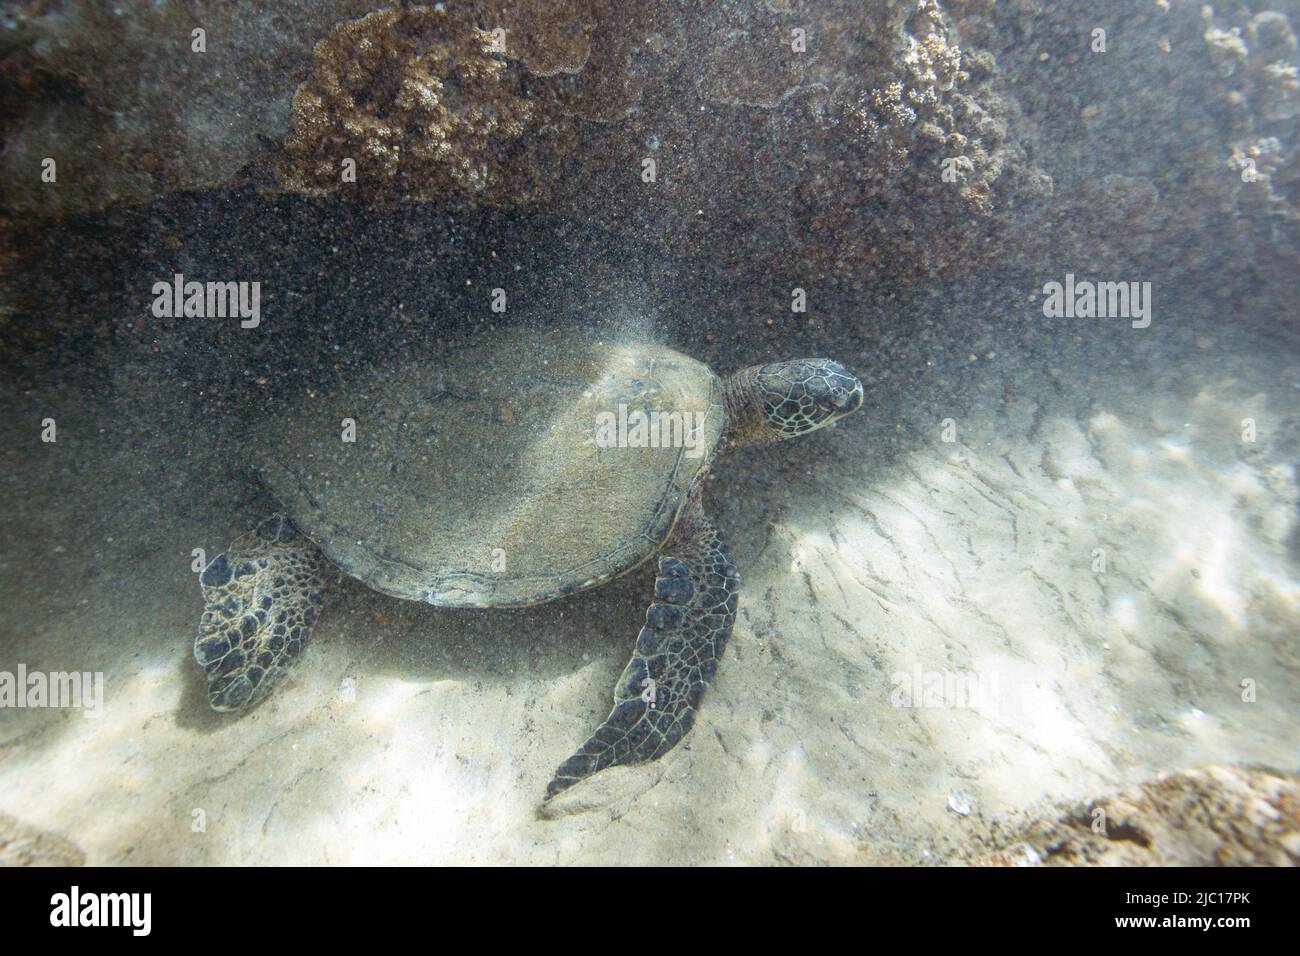 Tortue verte, tortue rocheuse, tortue de viande (Chelonia mydas), reposant au fond d'un récif de corail, États-Unis, Hawaï, Maui Banque D'Images